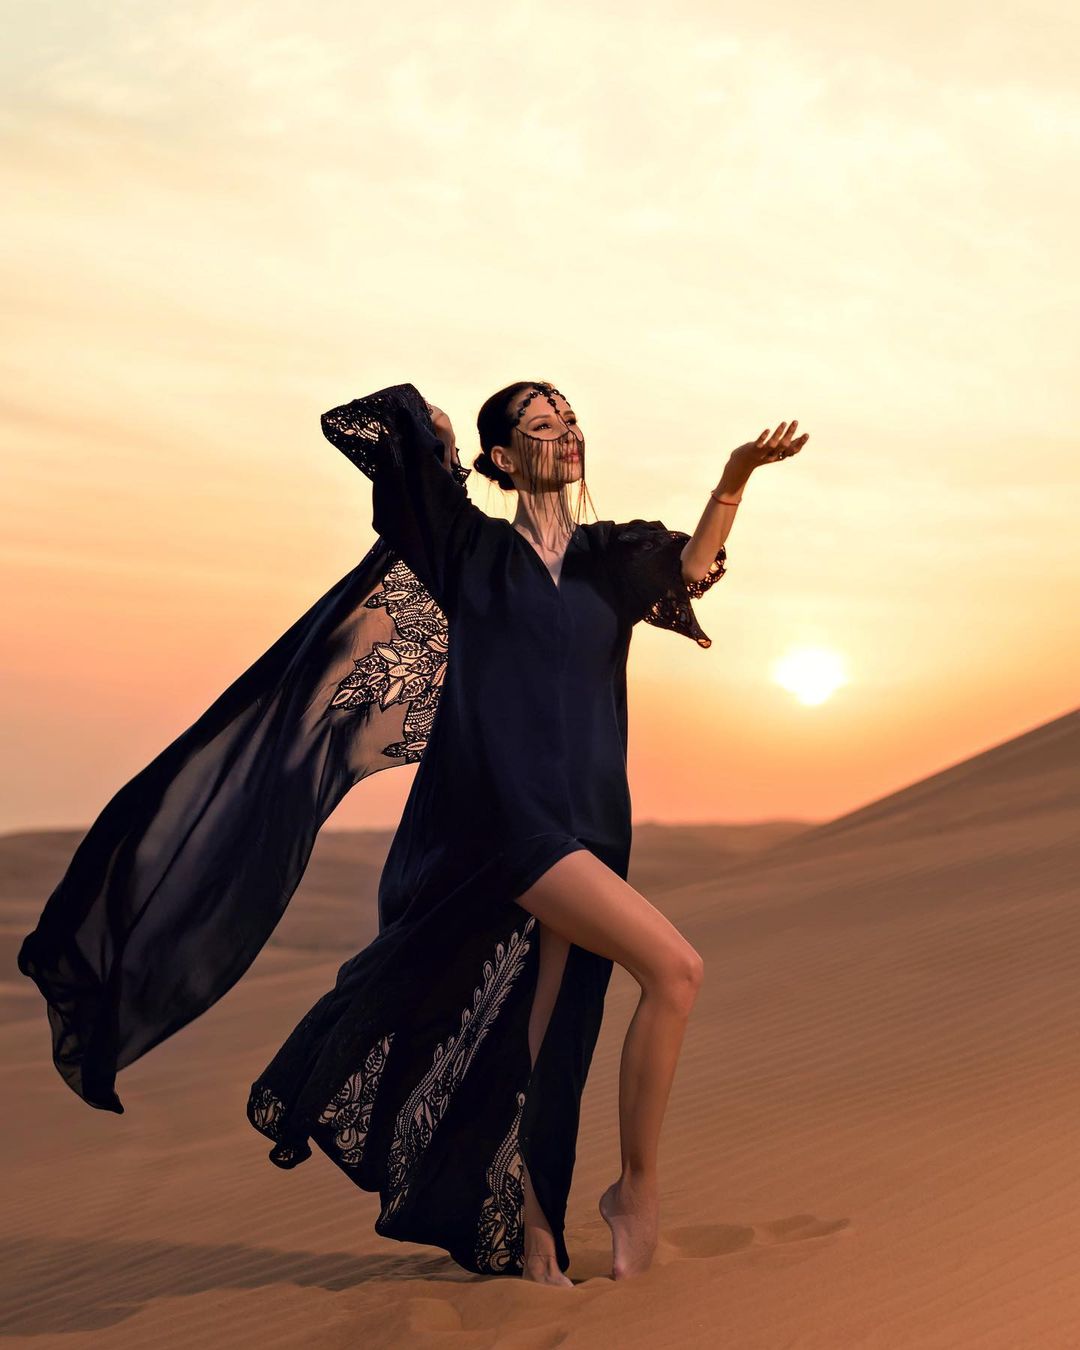 Забронировать Женскую Фотосессию в Дубае и Абу-Даби. Профессиональный Индивидуальный Женский Фотограф в ОАЭ. Дубай Марина, Бурж Халифа, Пляж, Пустыня. Пишите!